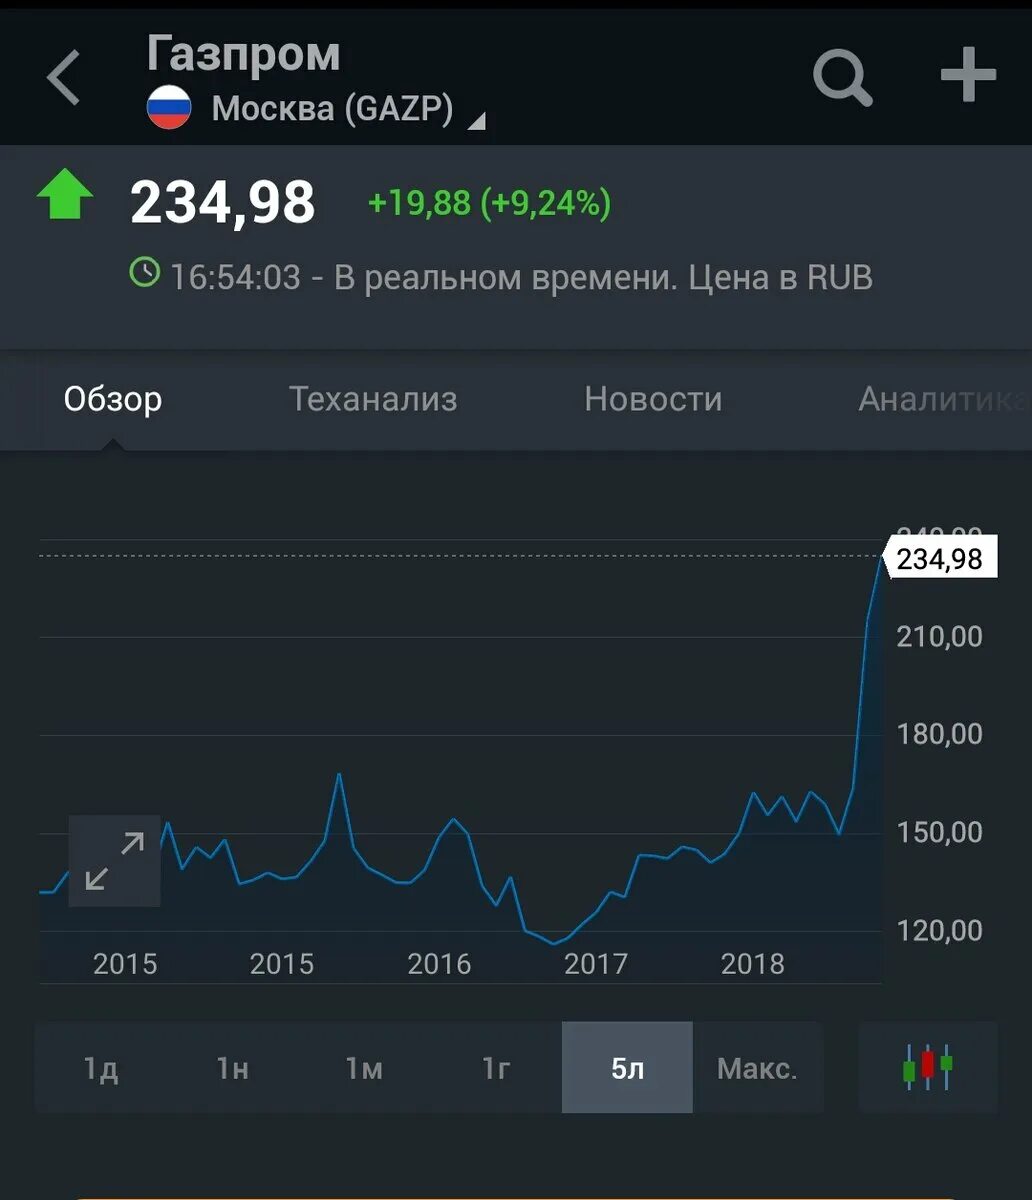 Газпромбанк купить акции газпрома цена сегодня